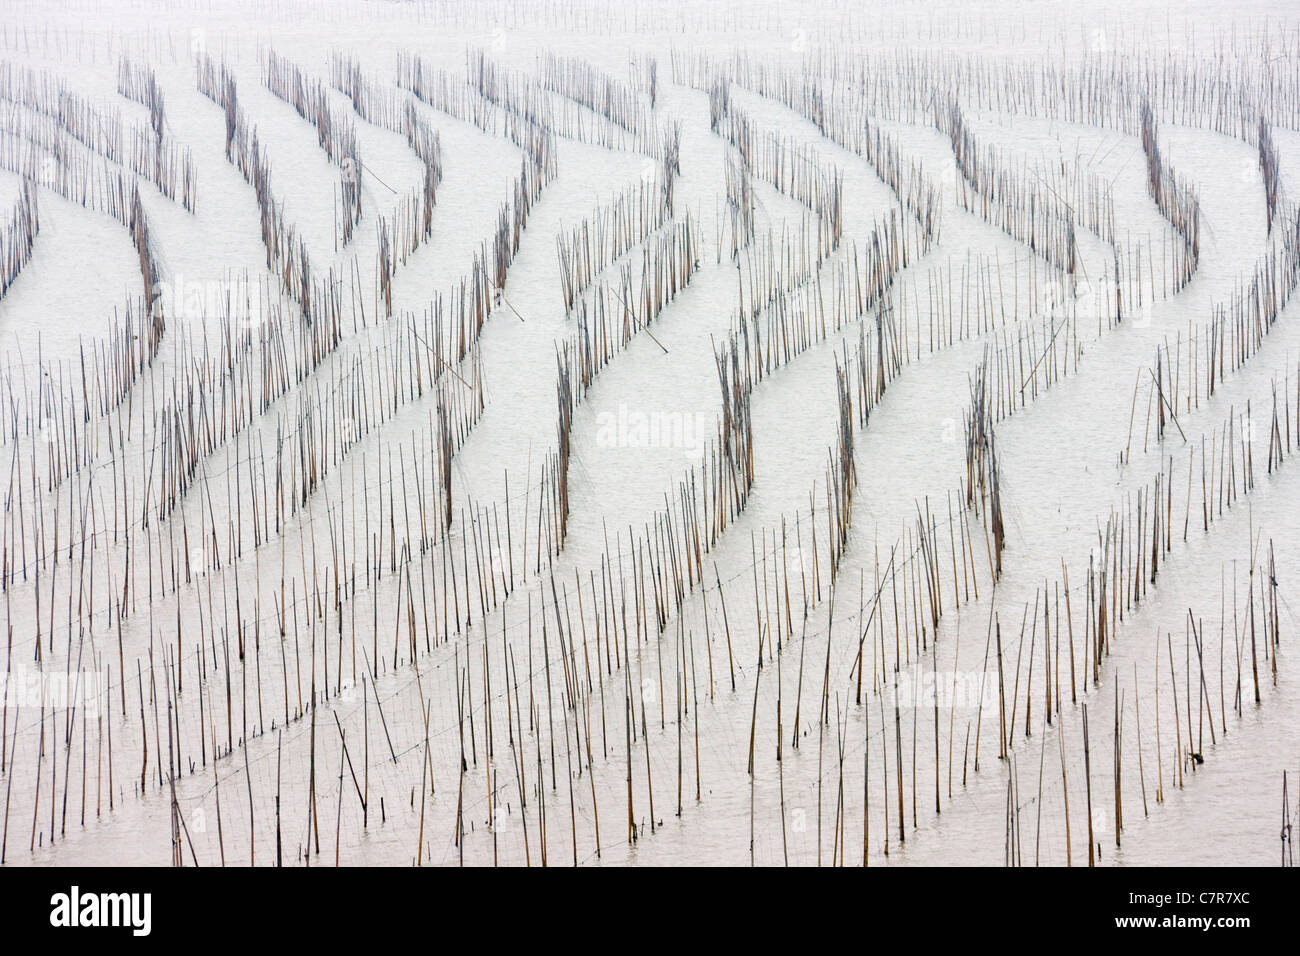 Canne di bambù per essiccare le alghe, il Mar della Cina orientale, Xiapu, Fujian, Cina Foto Stock